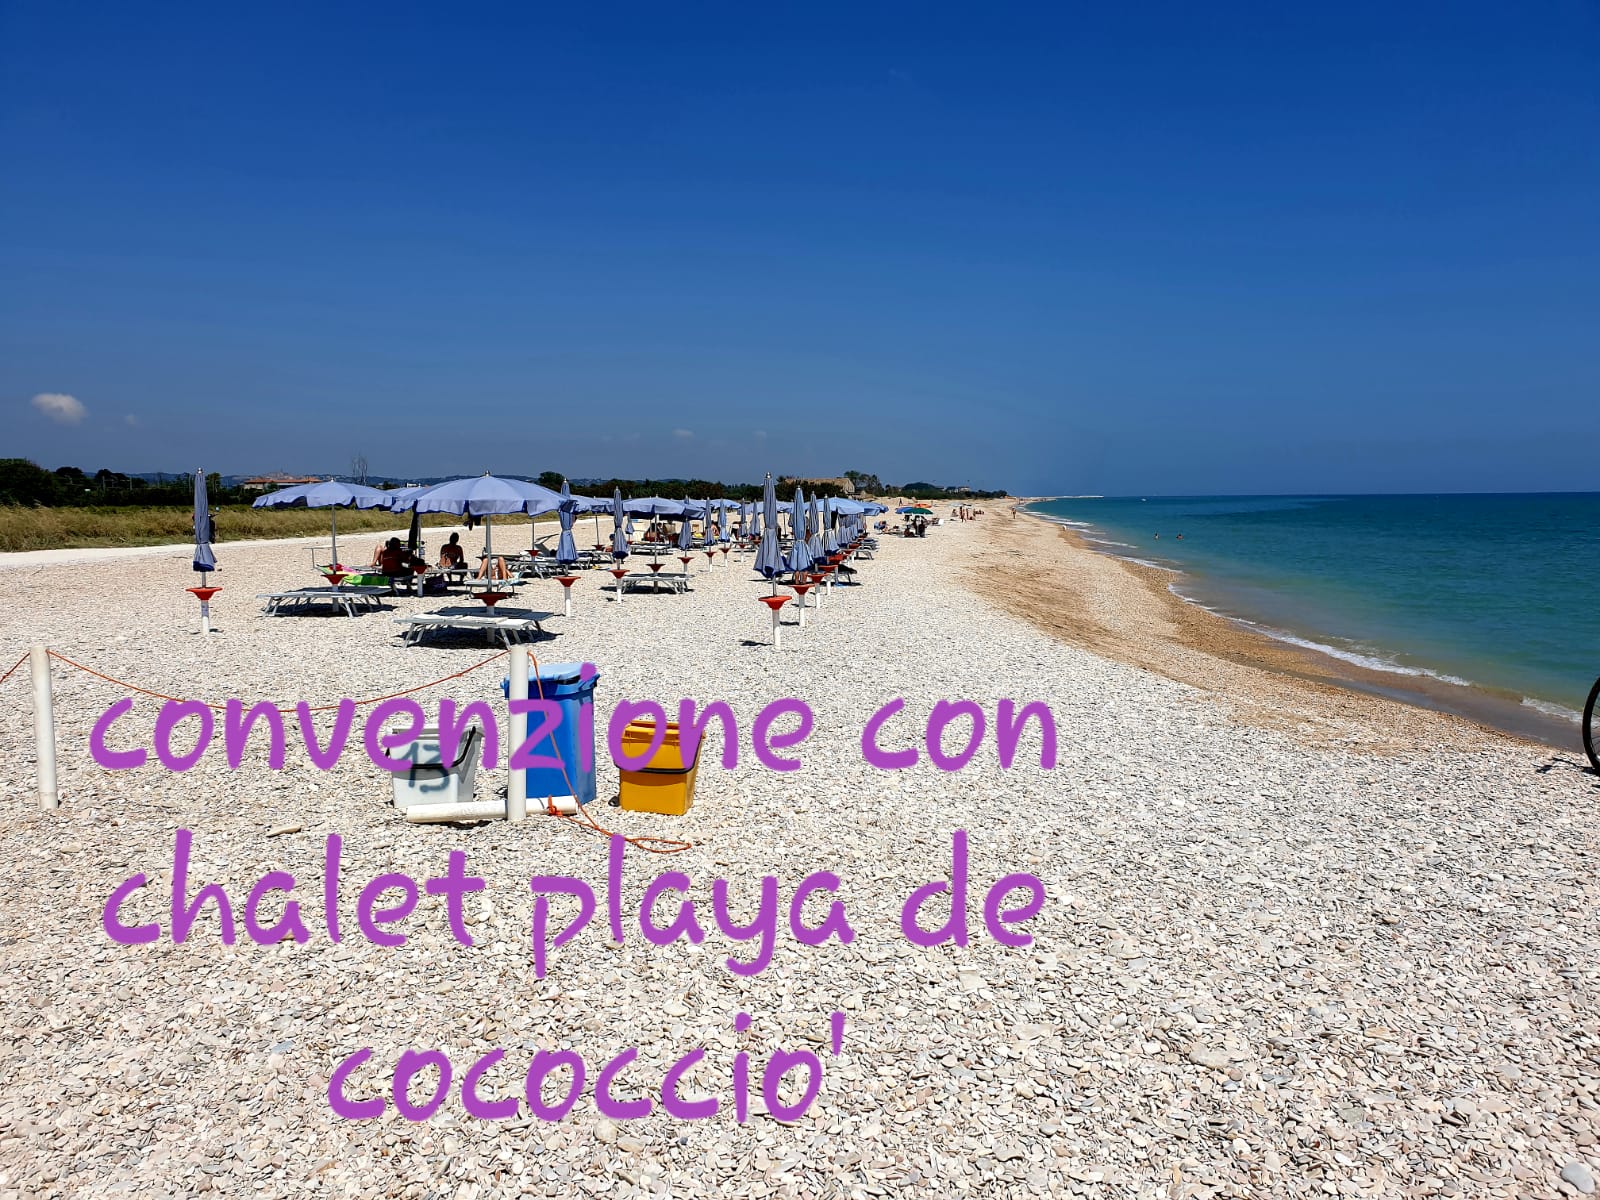 Convenzione chalet la Playa de Cococciò